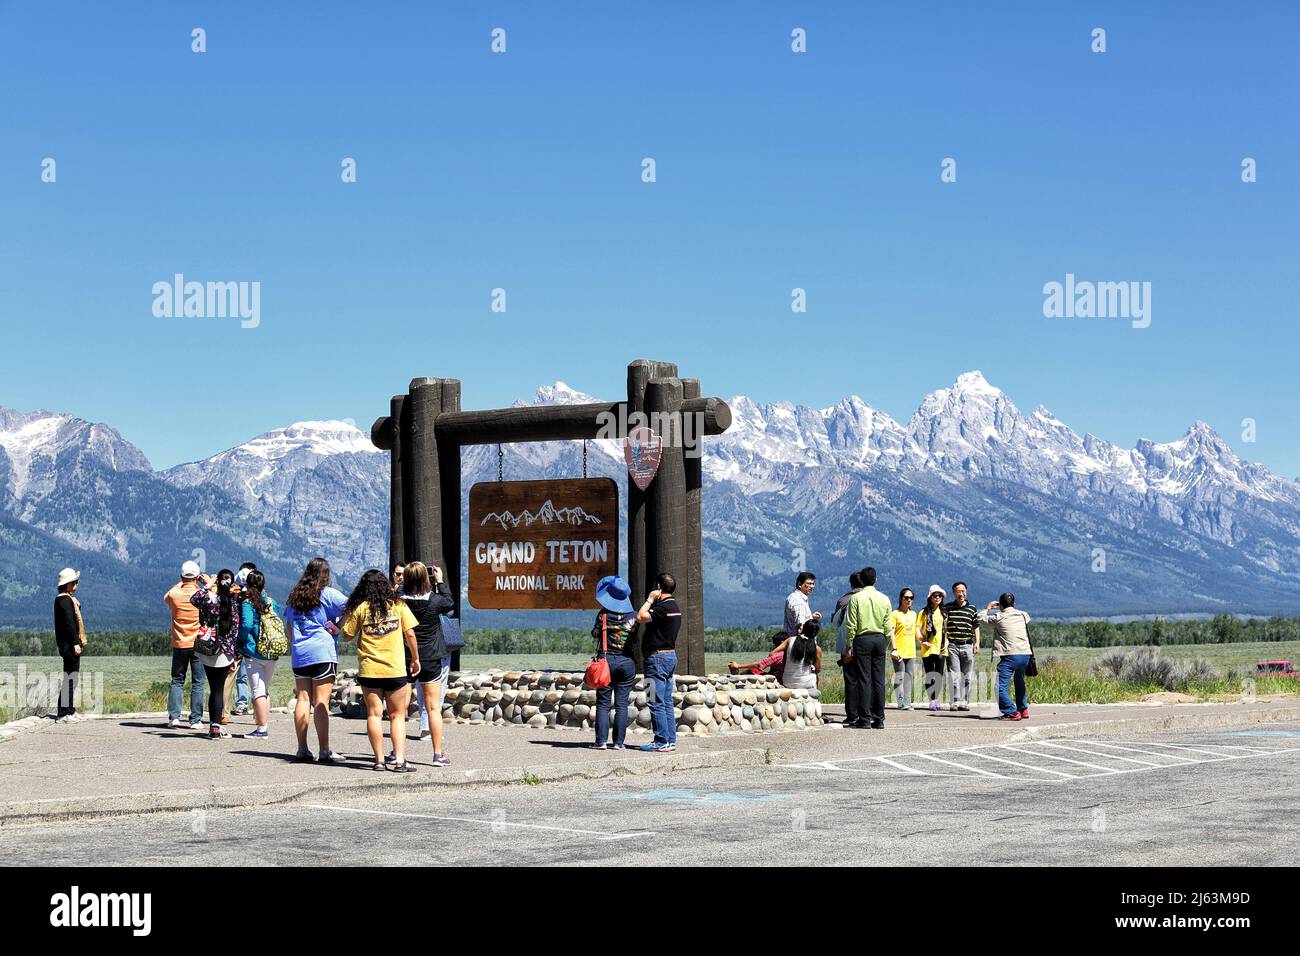 Un groupe de touristes asiatiques prenant des photos devant le panneau d'entrée dans le parc national de Grand Teton. Banque D'Images